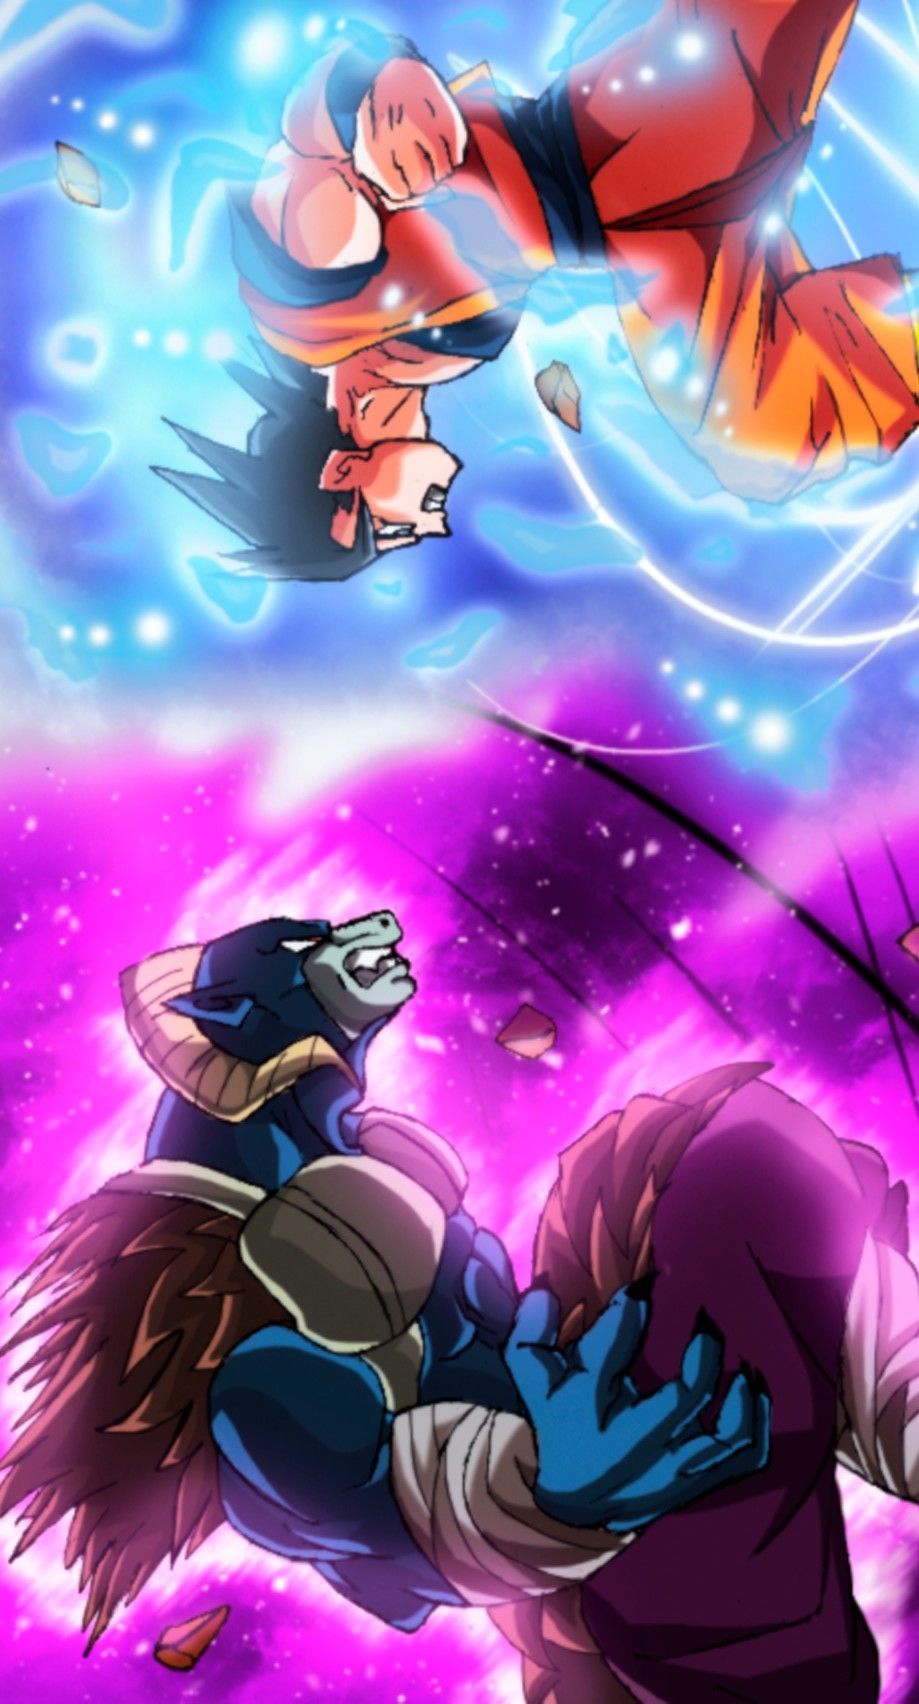 Goku Vs Moro. Anime dragon ball super, Dragon ball art, Dragon ball artwork